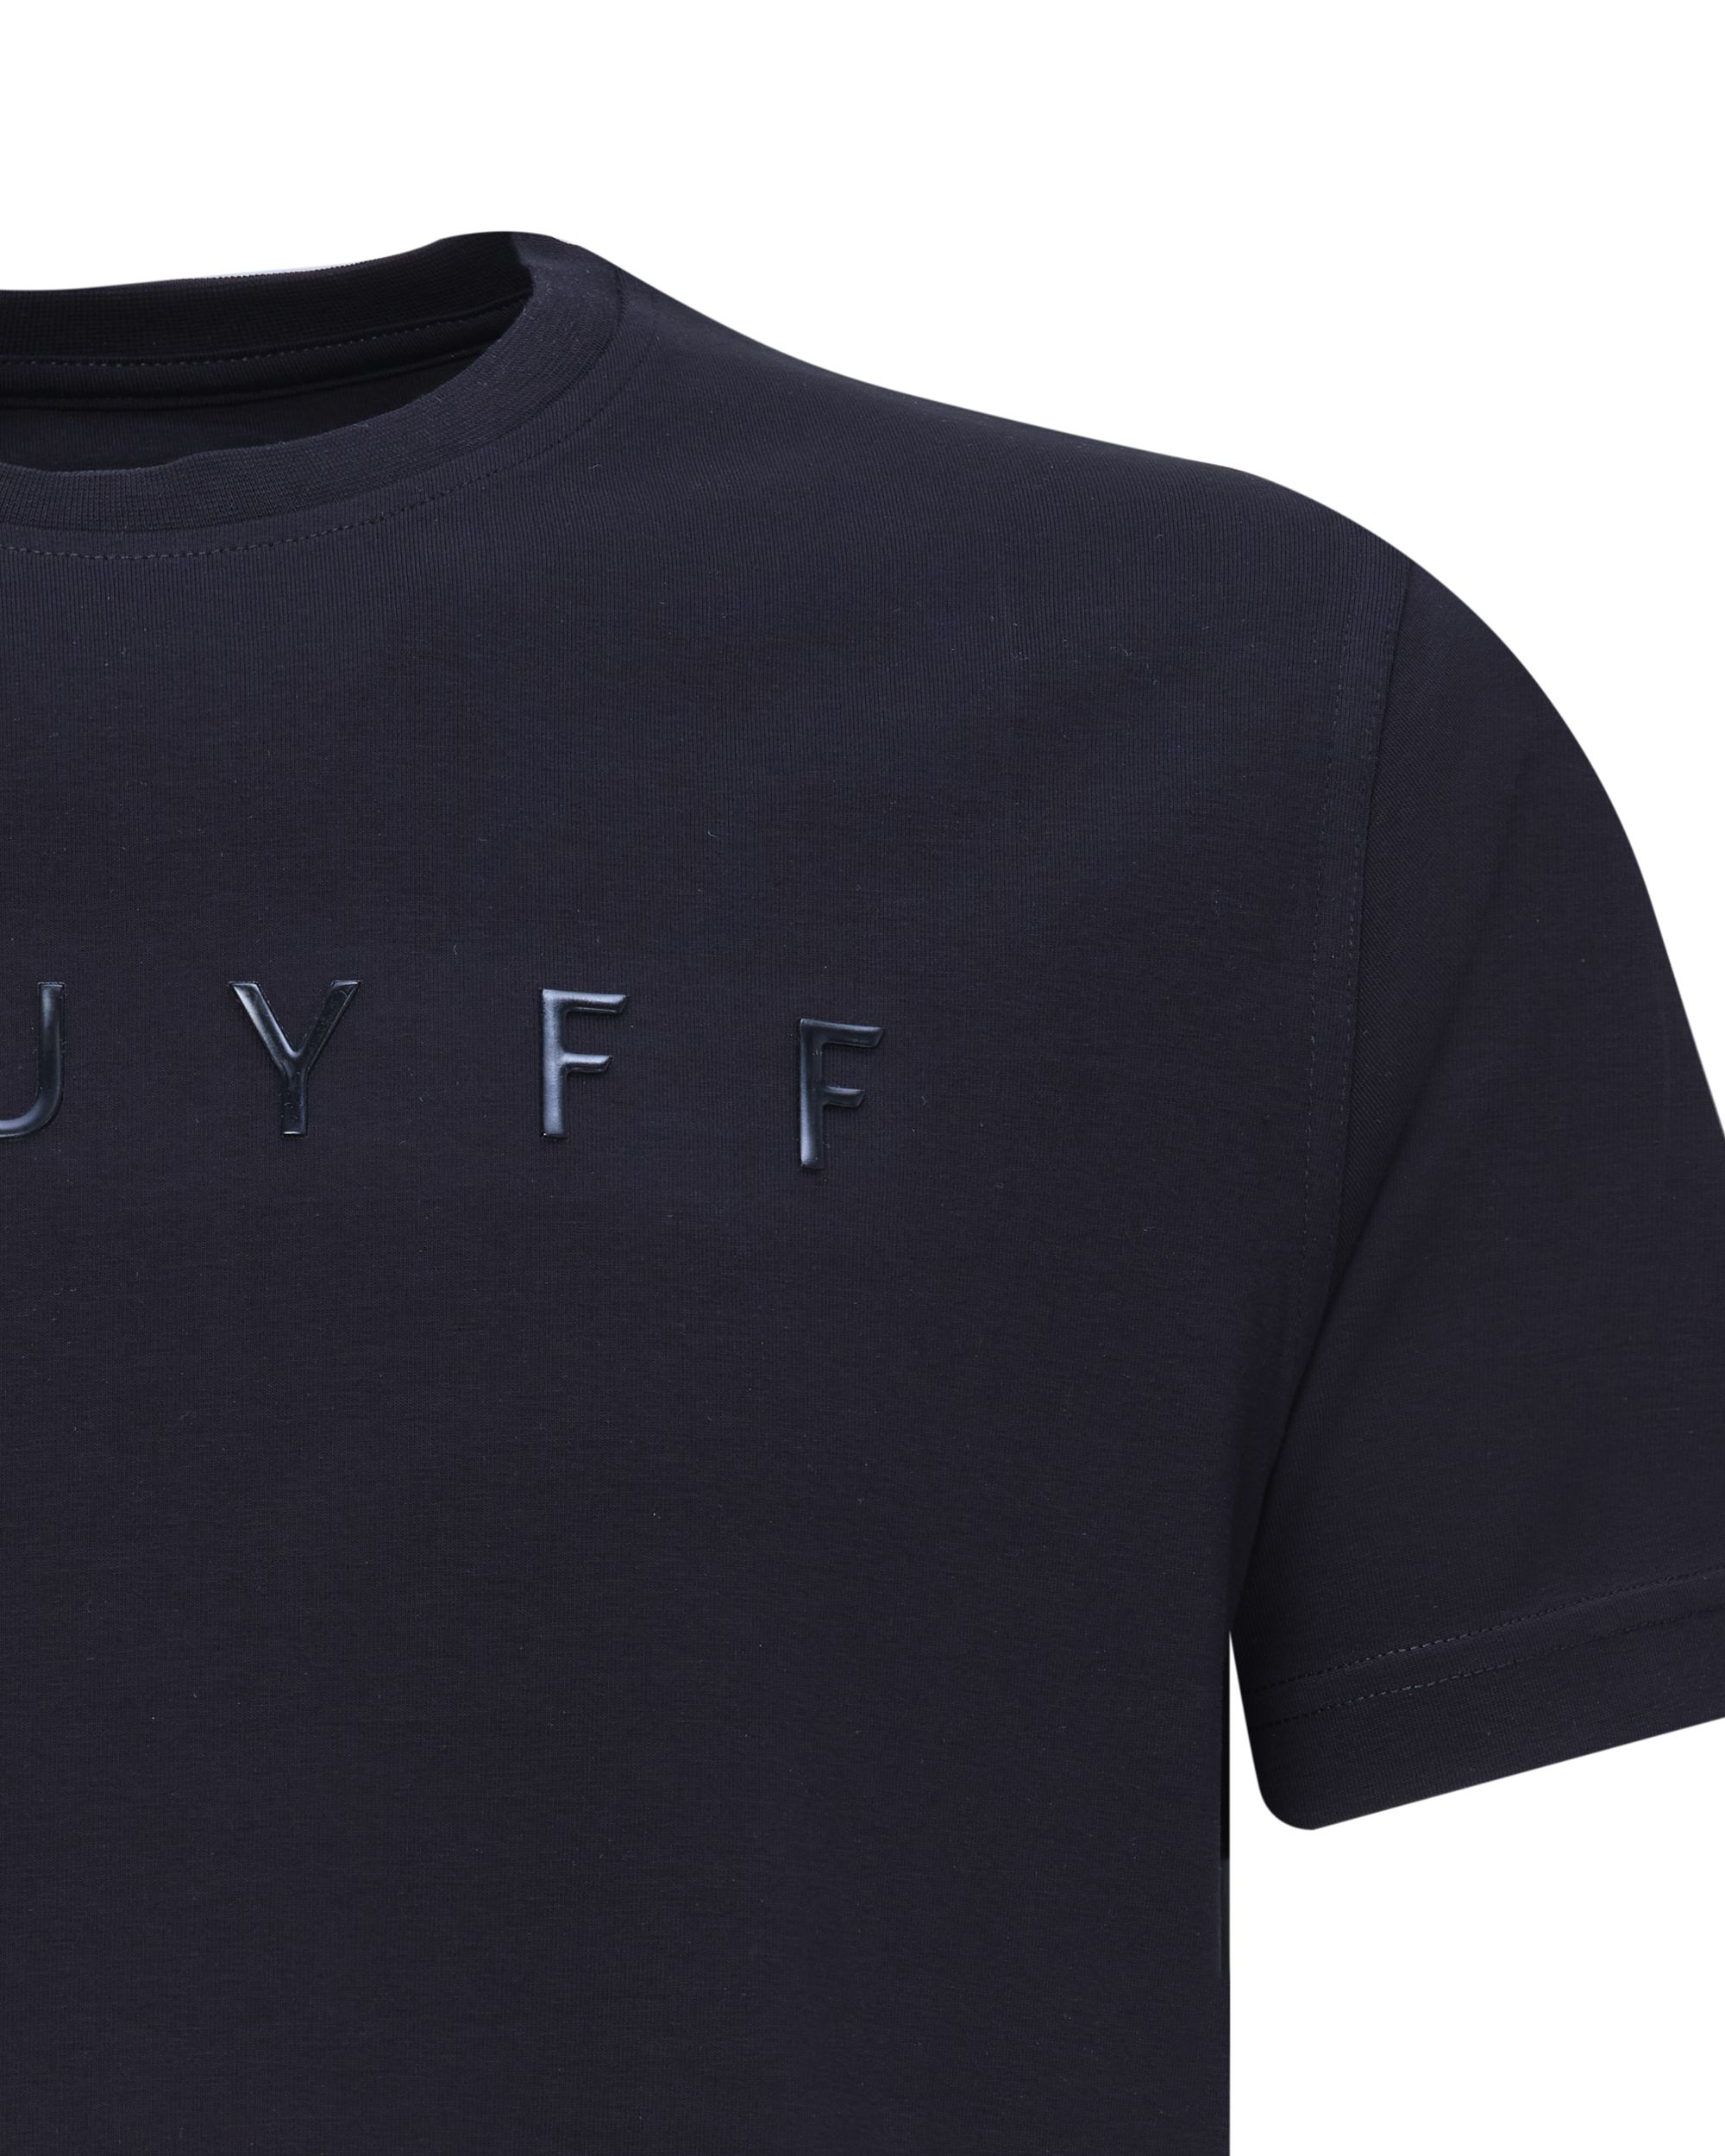 Cruyff Camillo T-shirt KM Zwart 078809-002-L